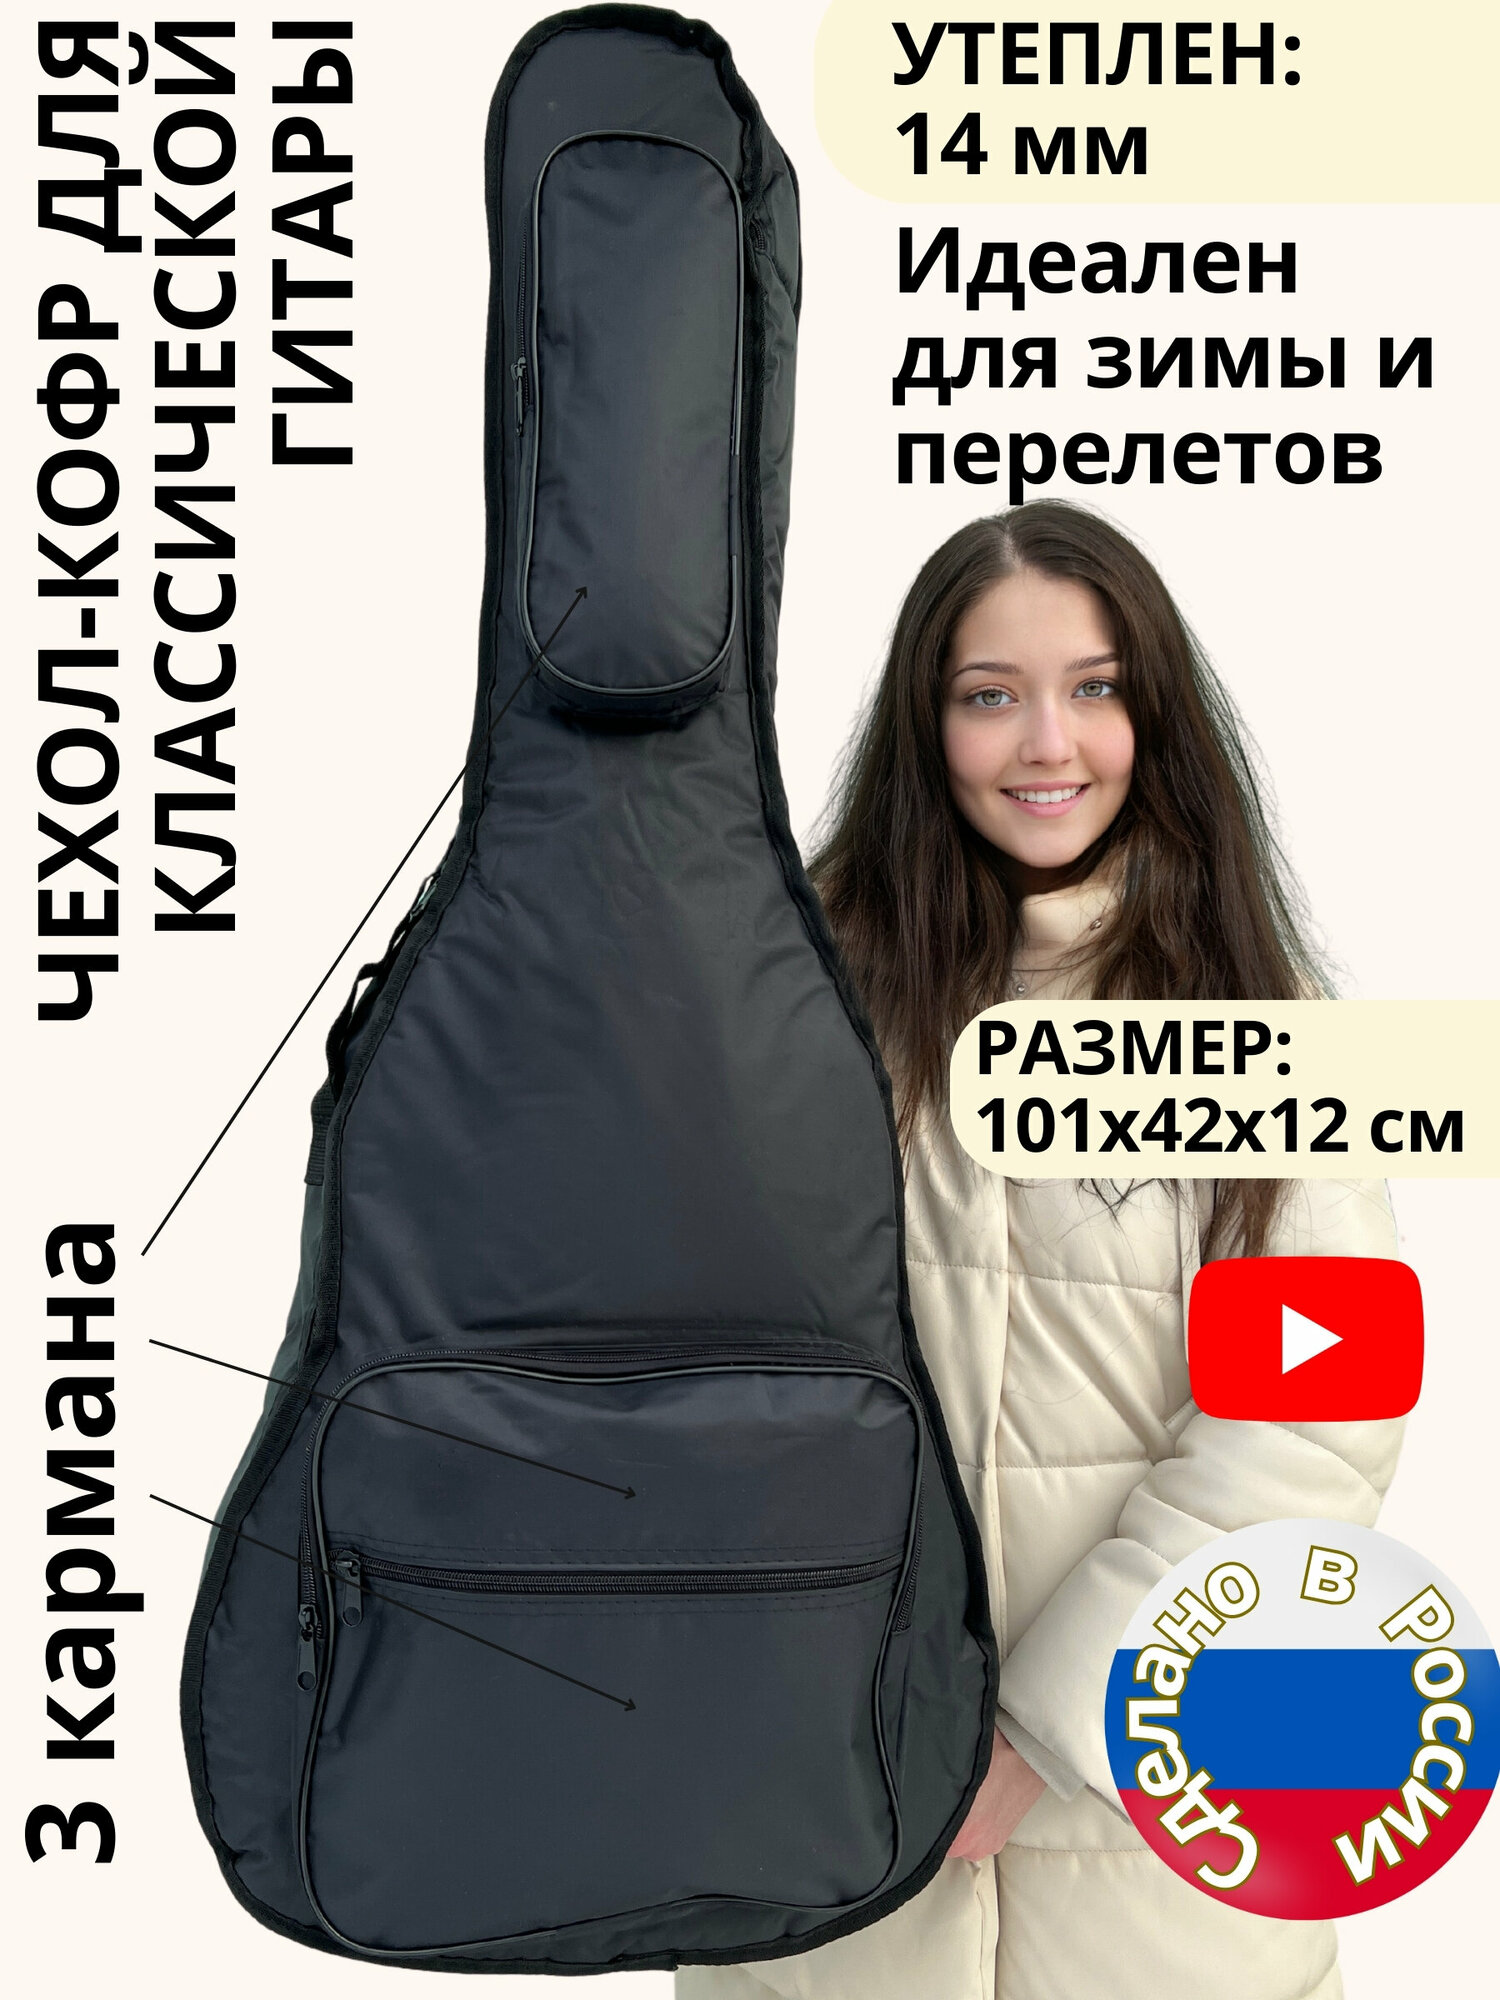 Чехол для классической гитары, утеплен, 14 мм. 3 кармана, 2 регулируемых ремня. Идеален для зимы